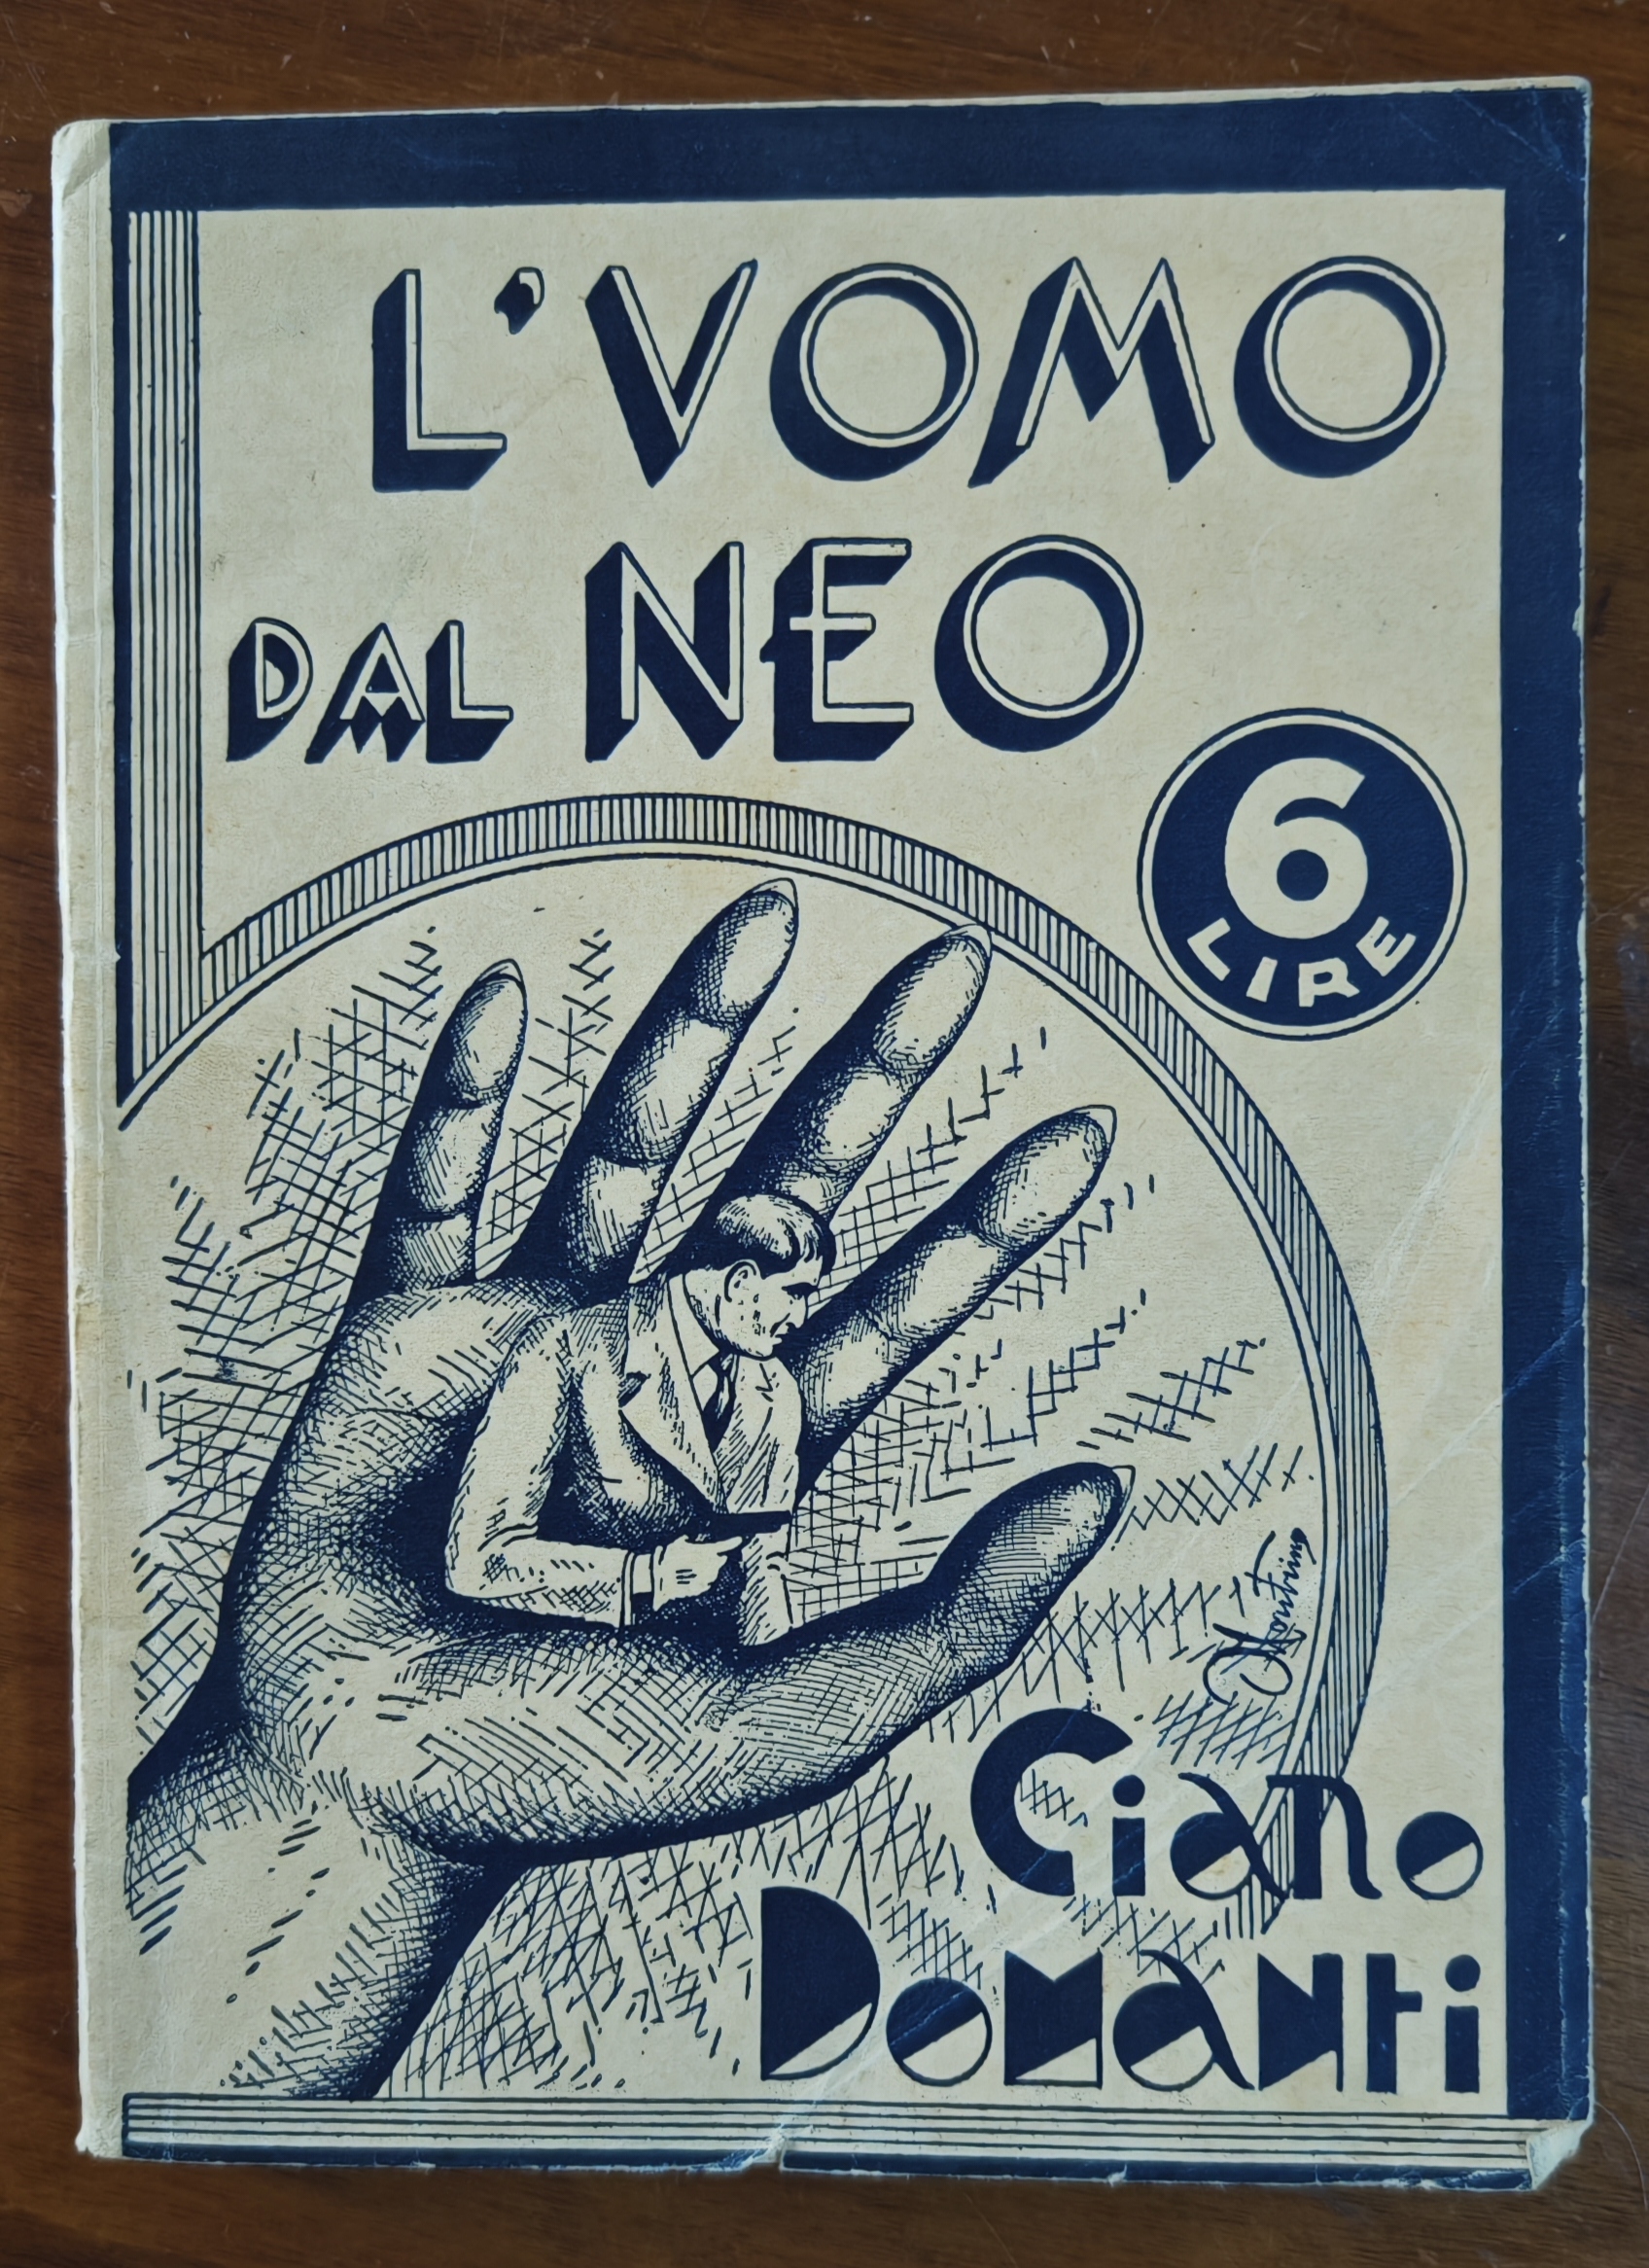 I racconti di uno sconosciuto quindicenne: “L’uomo dal neo” (1936) di Ciano Domanti